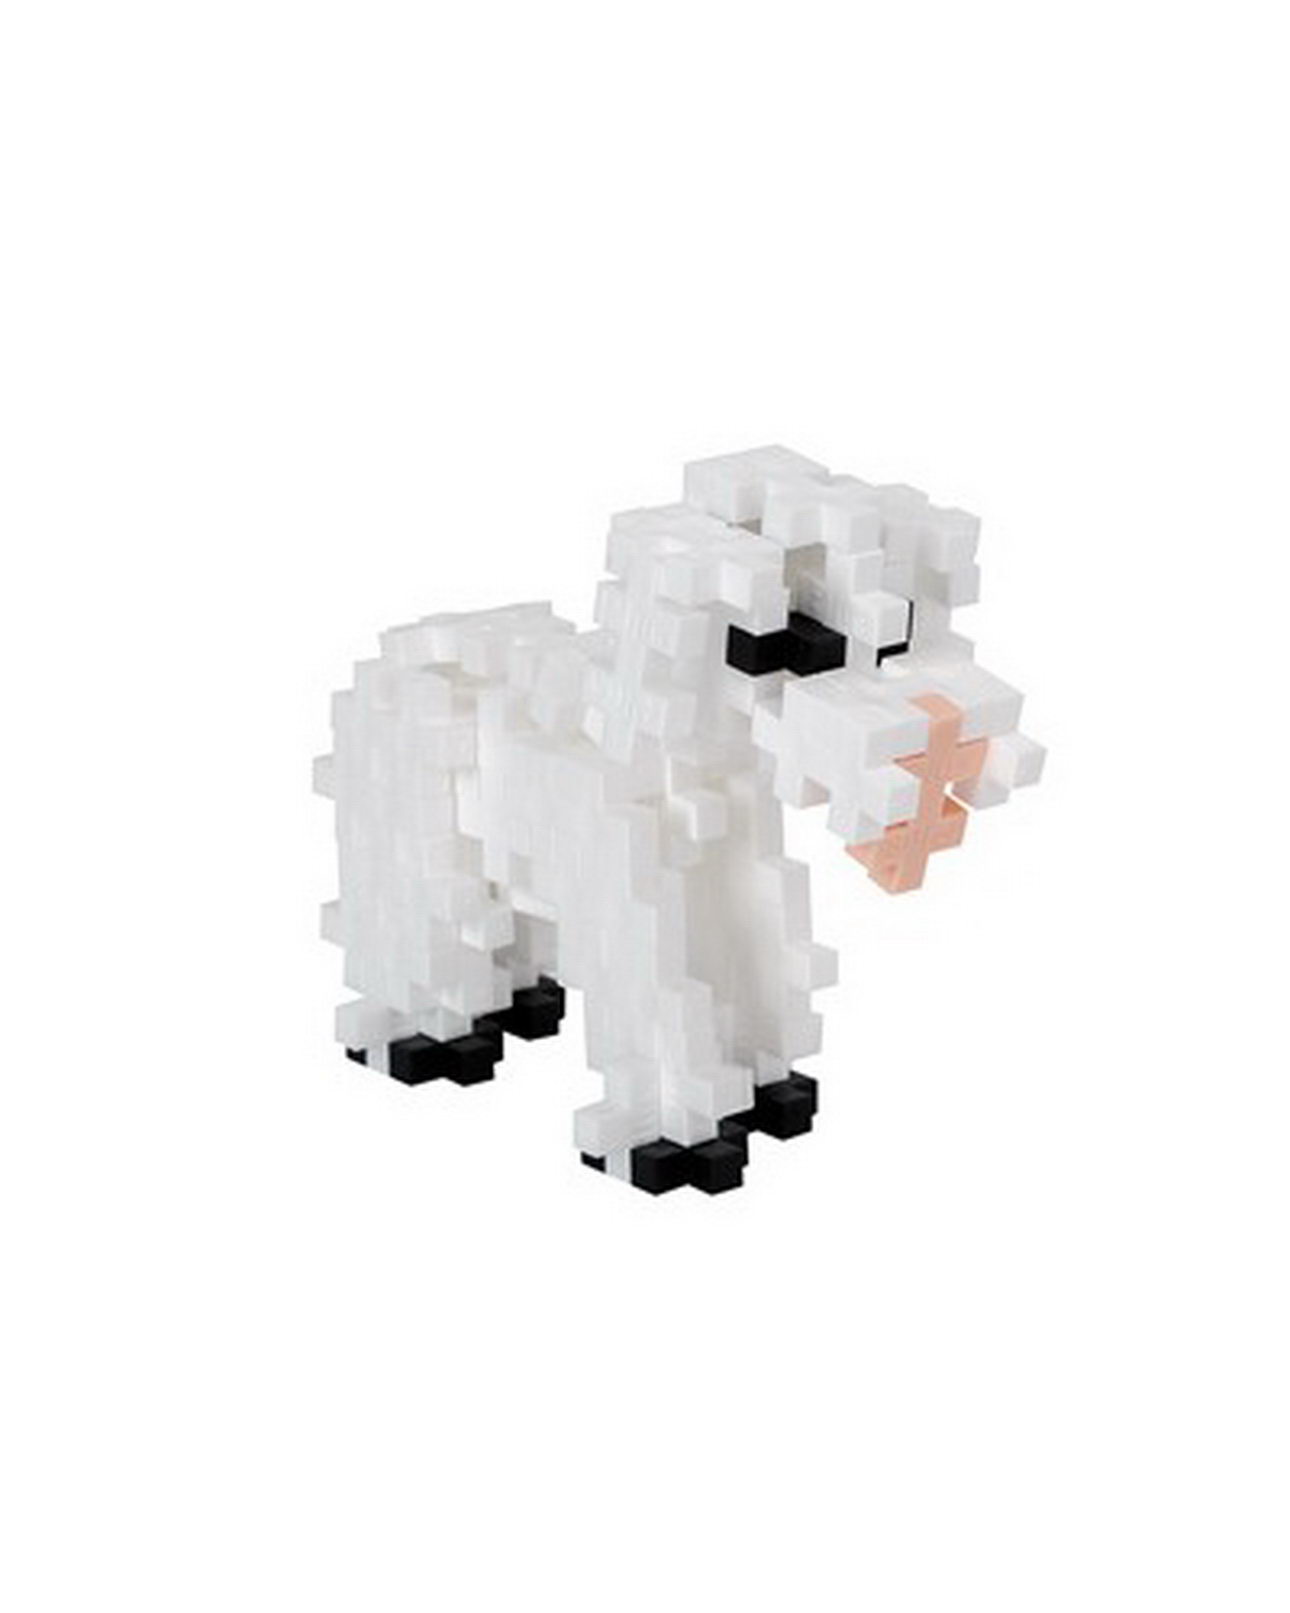 Plus-Plus - Röhre Schaf 100 Teile (4119) - Bausteine kaufen